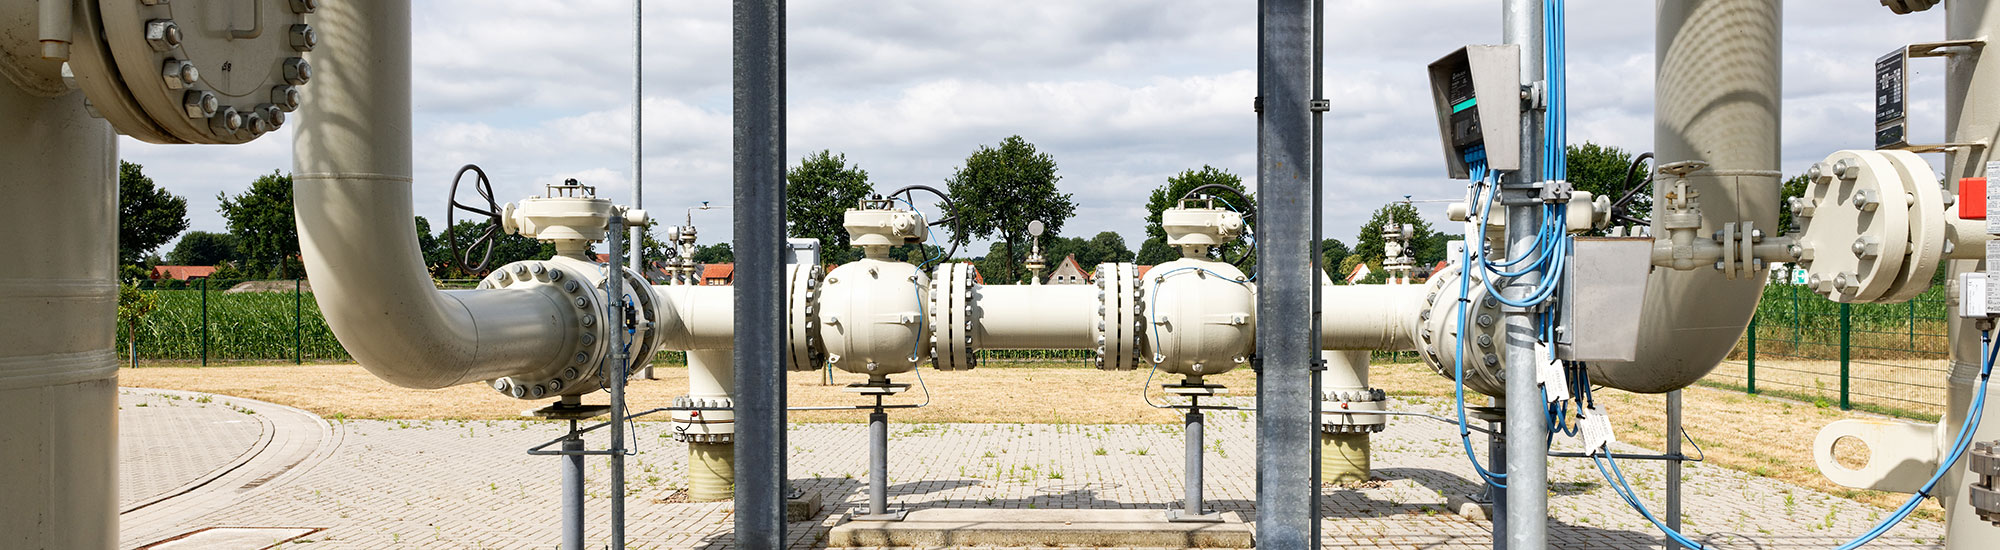 Nowega betreibt als Fernleitungsnetzbetreiber auf Münster rund 1500 km Gashochdruckleitungen.